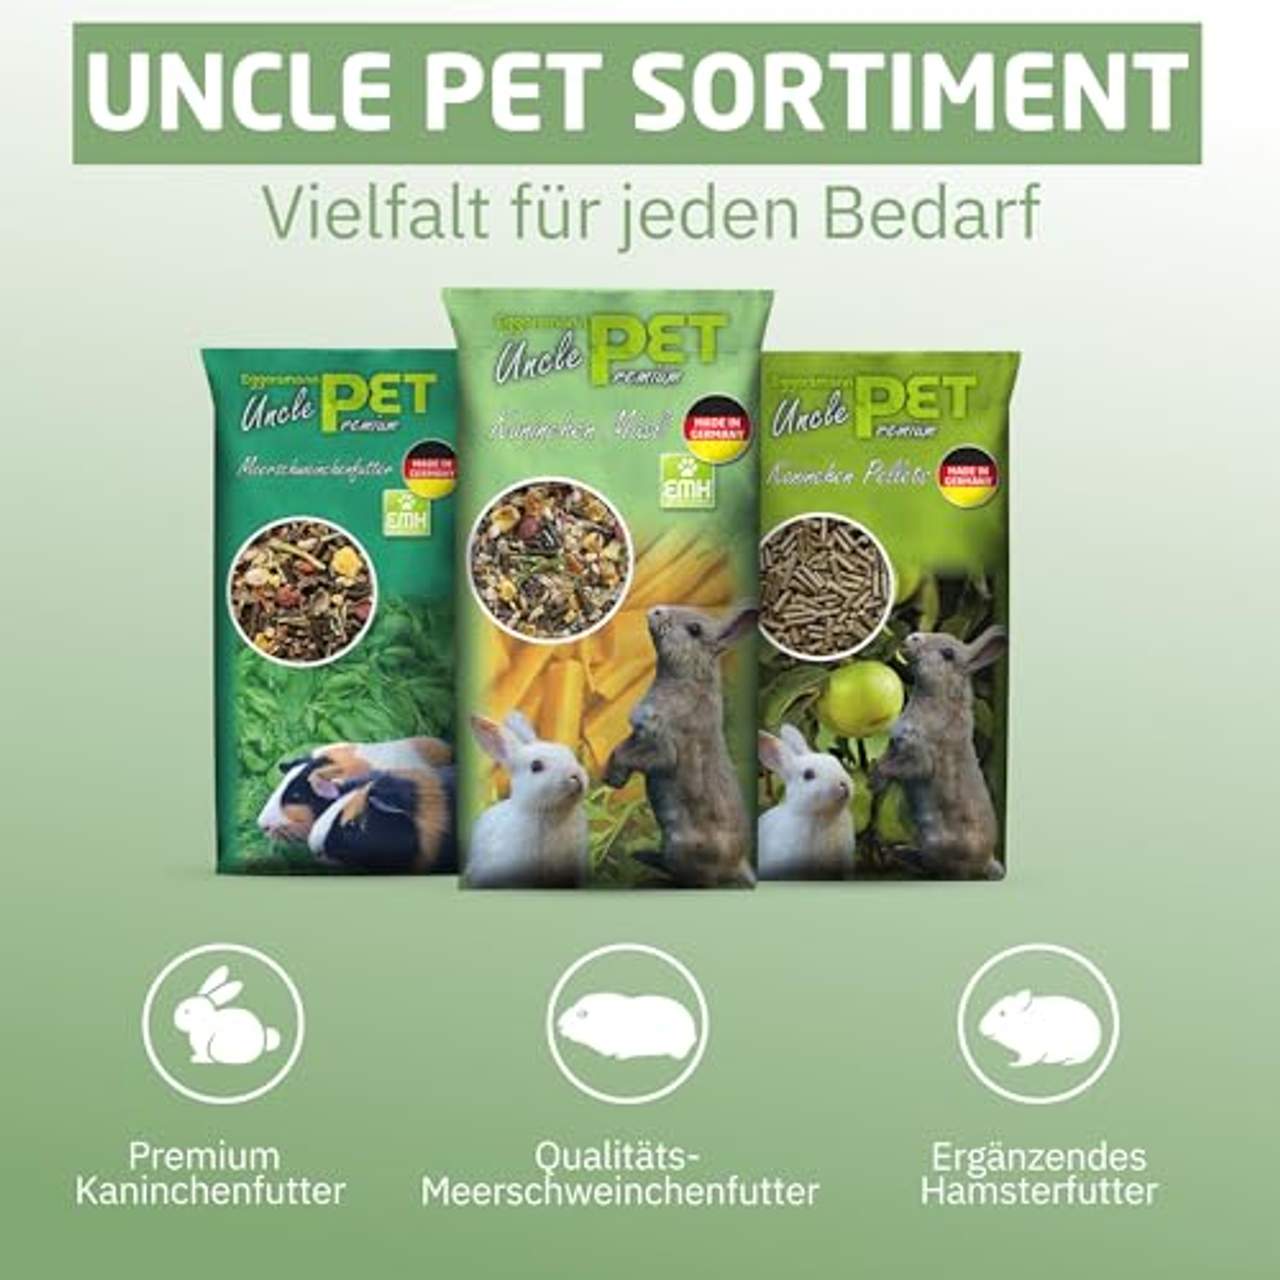 Eggersmann Uncle Pet Premium Kaninchen Müsli 25 kg